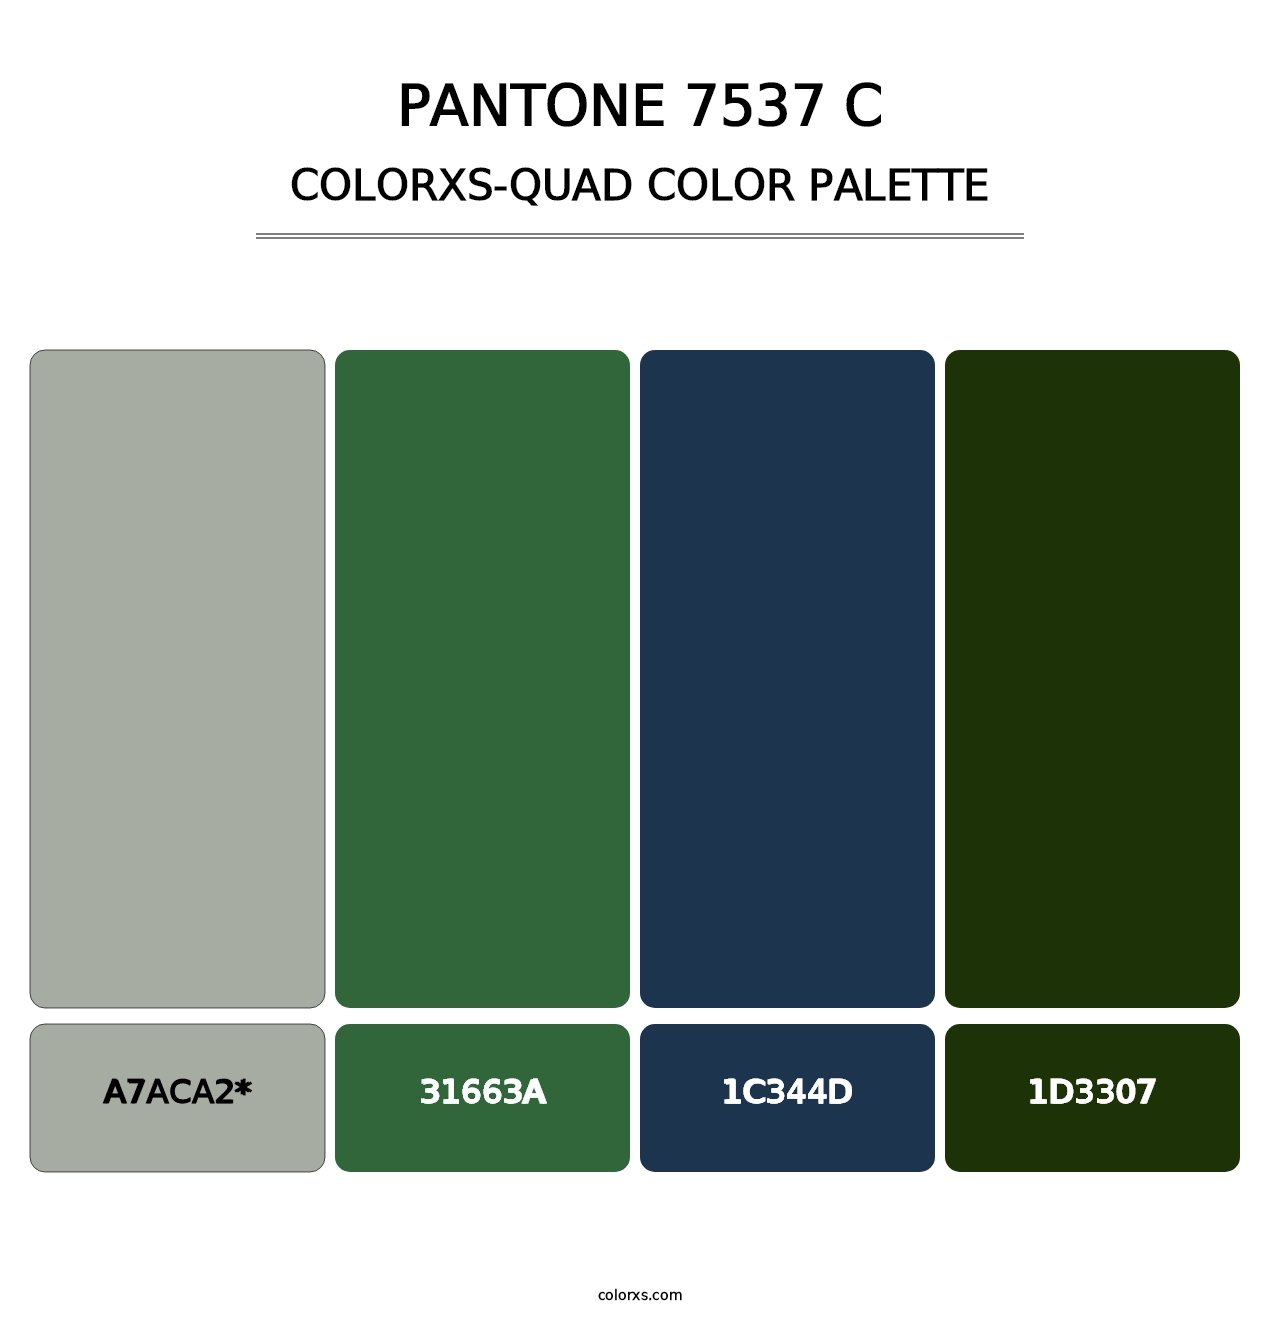 PANTONE 7537 C - Colorxs Quad Palette